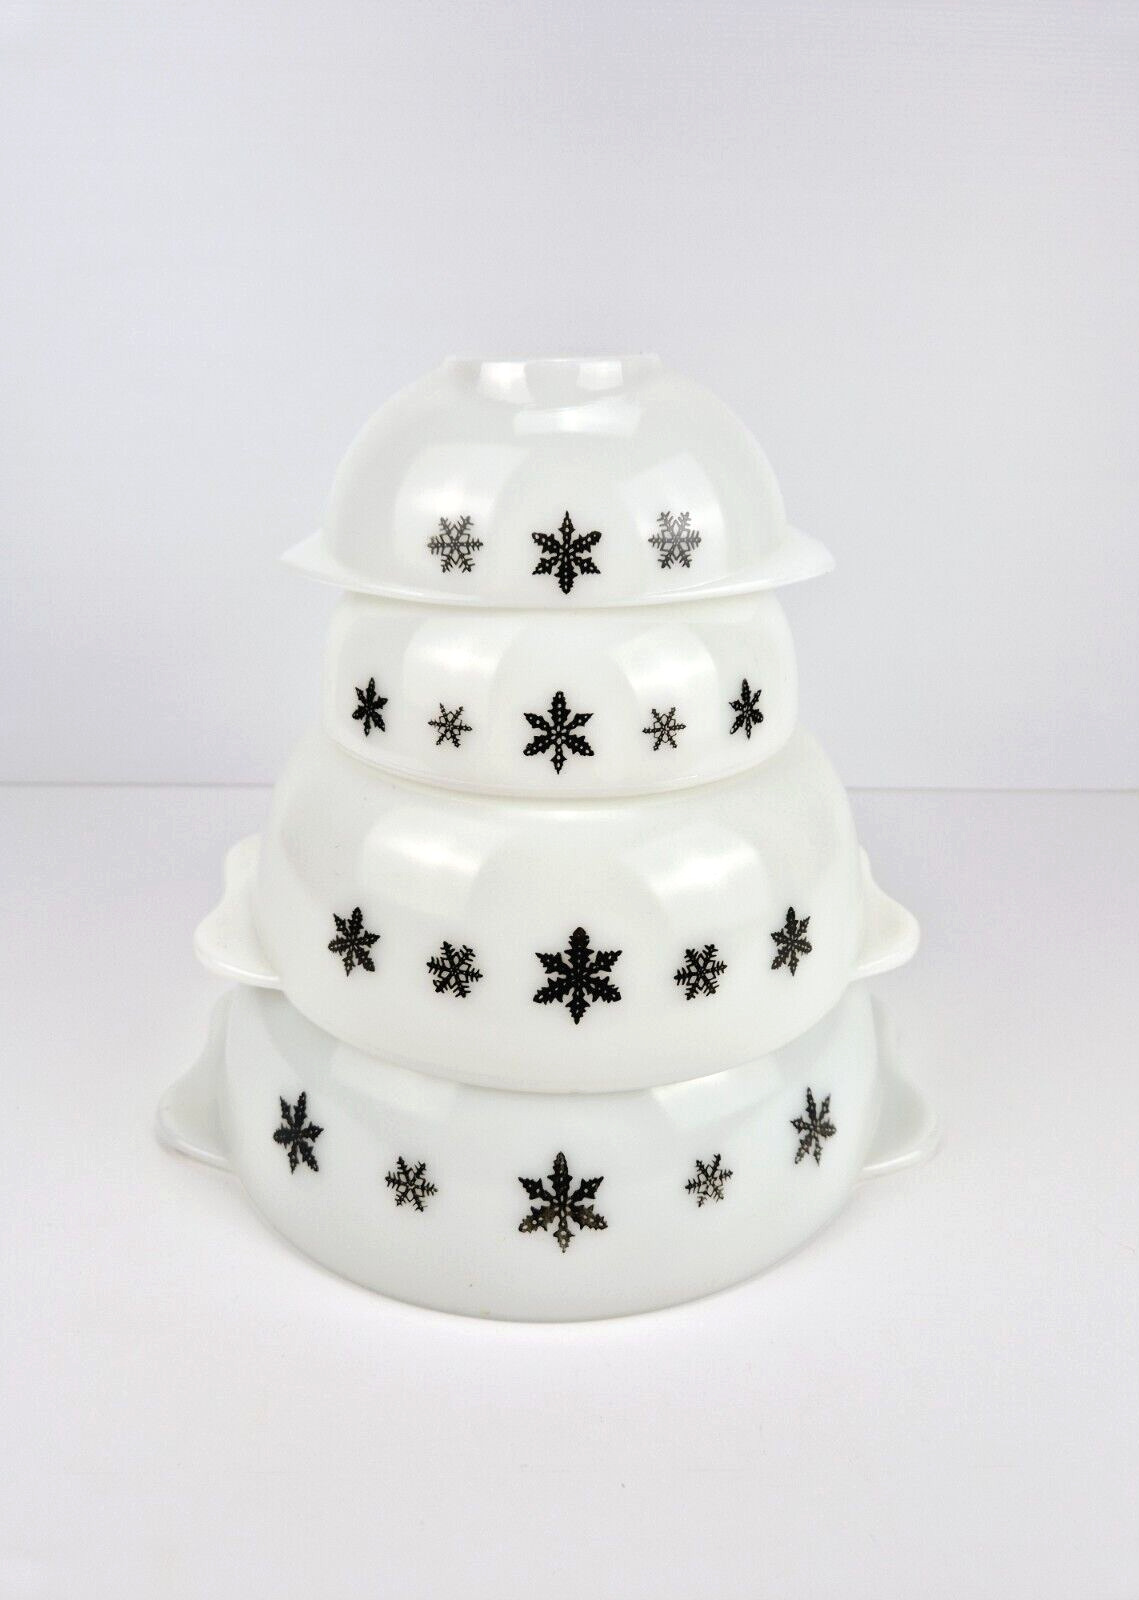 Vintage JAJ Pyrex Snowflake Gaiety White Black 4 Piece Bowl Set 1950s GC